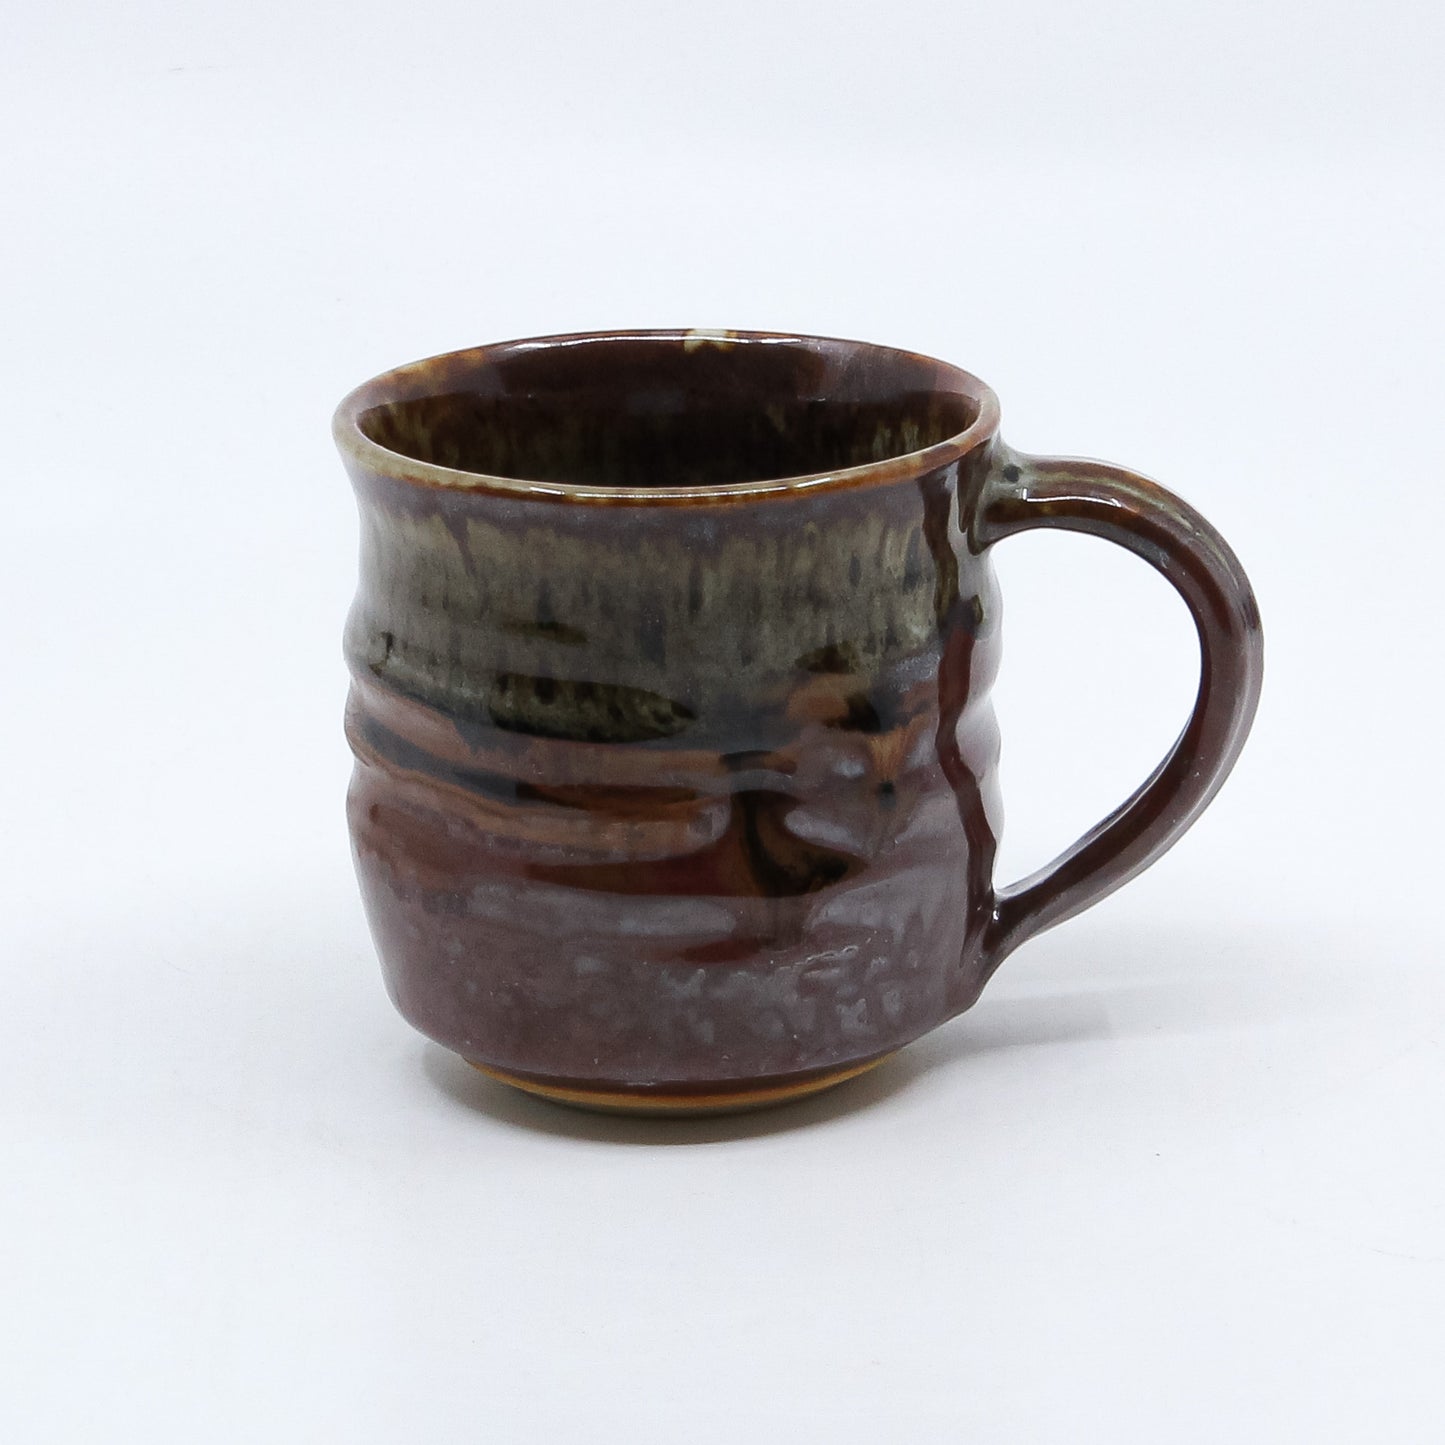 Small Brown Mug